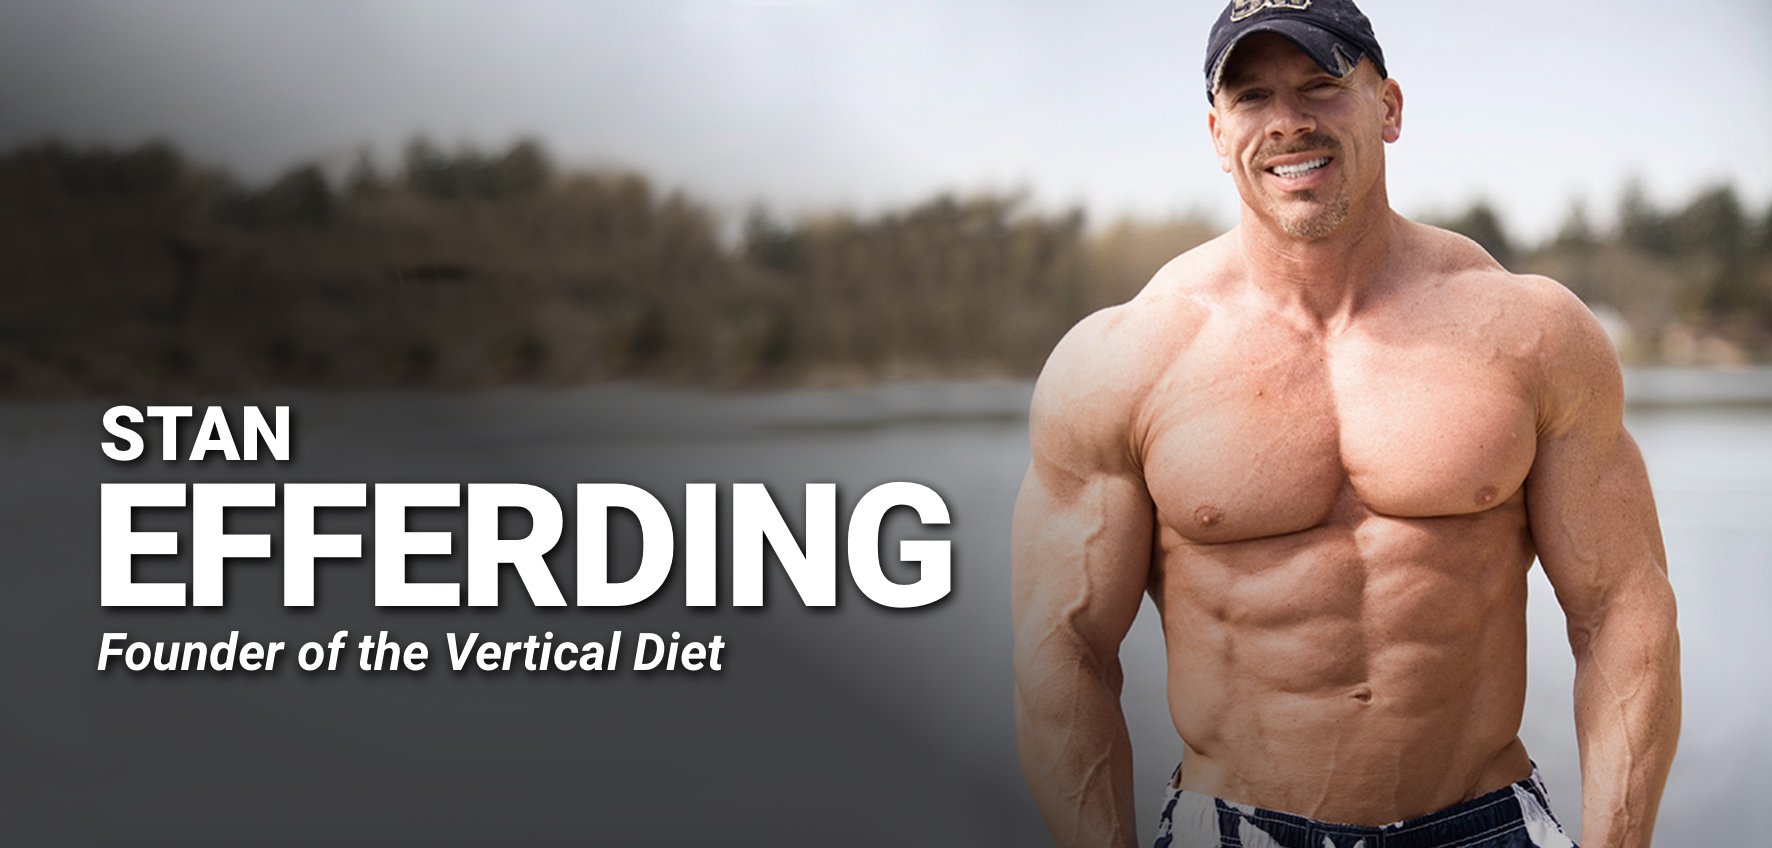 Thực đơn ăn kiêng Vertical Diet là một hệ thống dinh dưỡng độc đáo được phát triển bởi Stan Efferding - Vận động viên chuyên nghiệp.